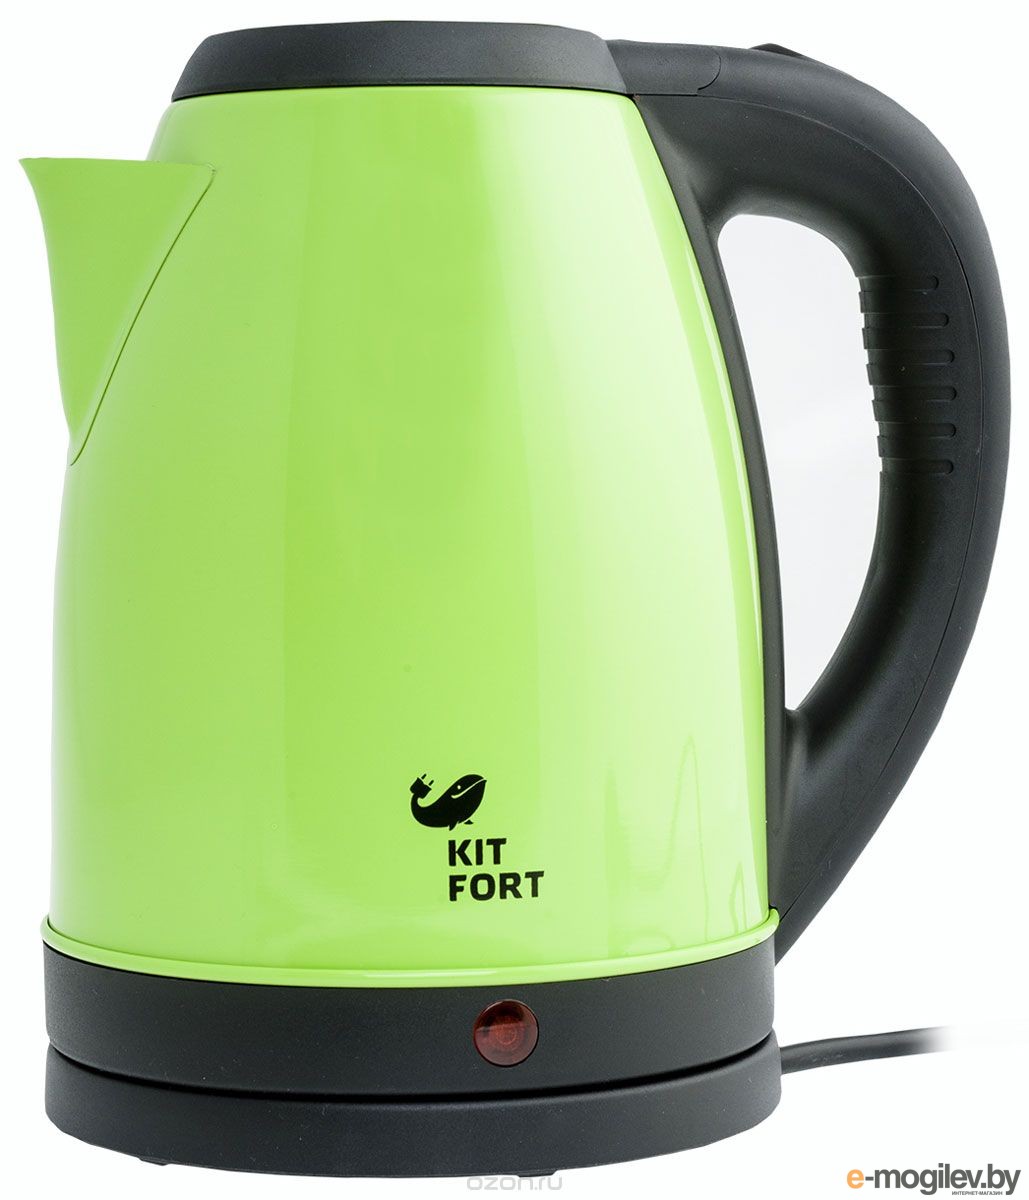 Купить корпус чайника. Чайник Kitfort KT-602. Чайник электрический Kitfort зеленый. Чайник Kitfort зеленый. Чайник Китфорт зеленый.